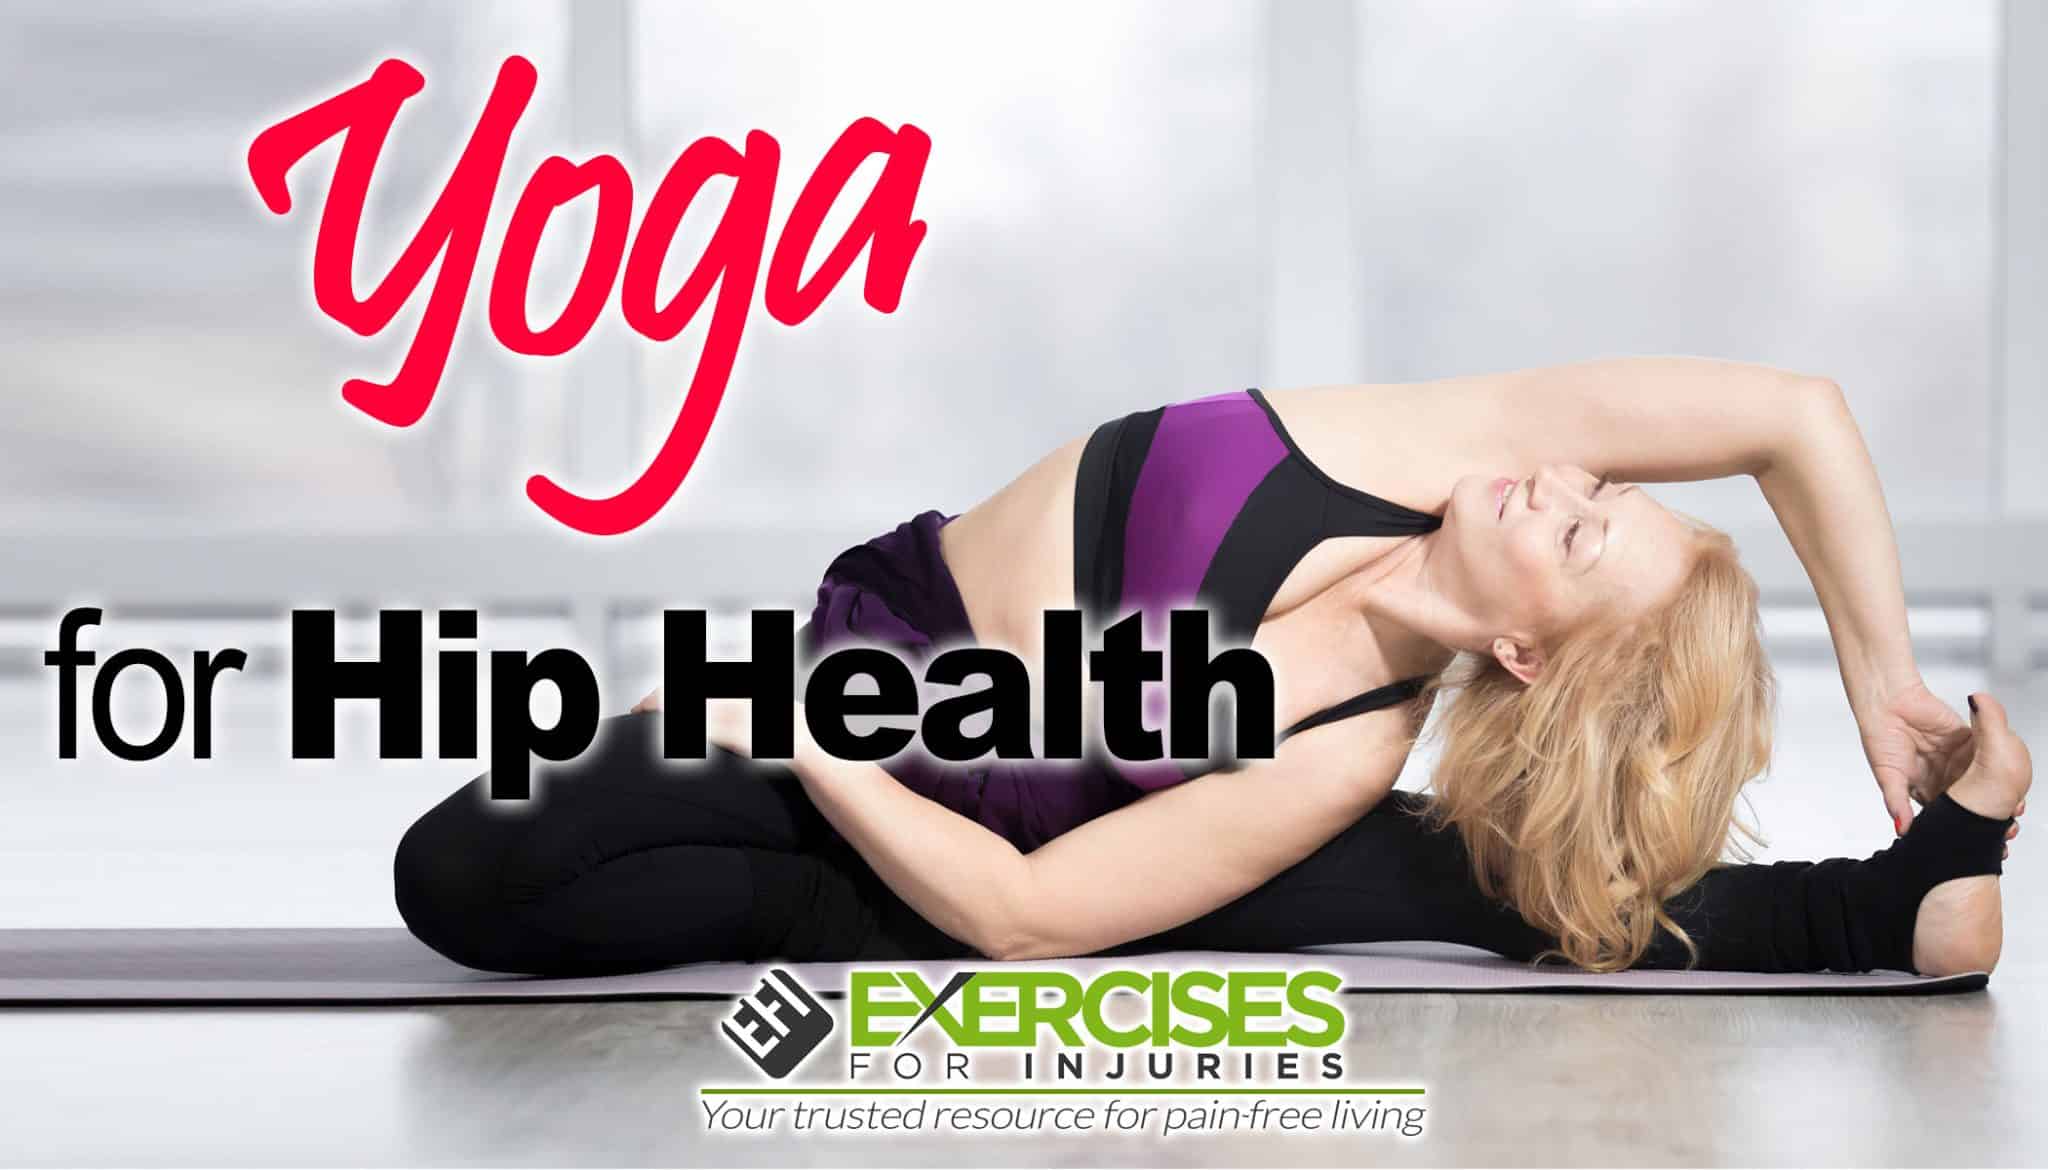 Yoga for hip health